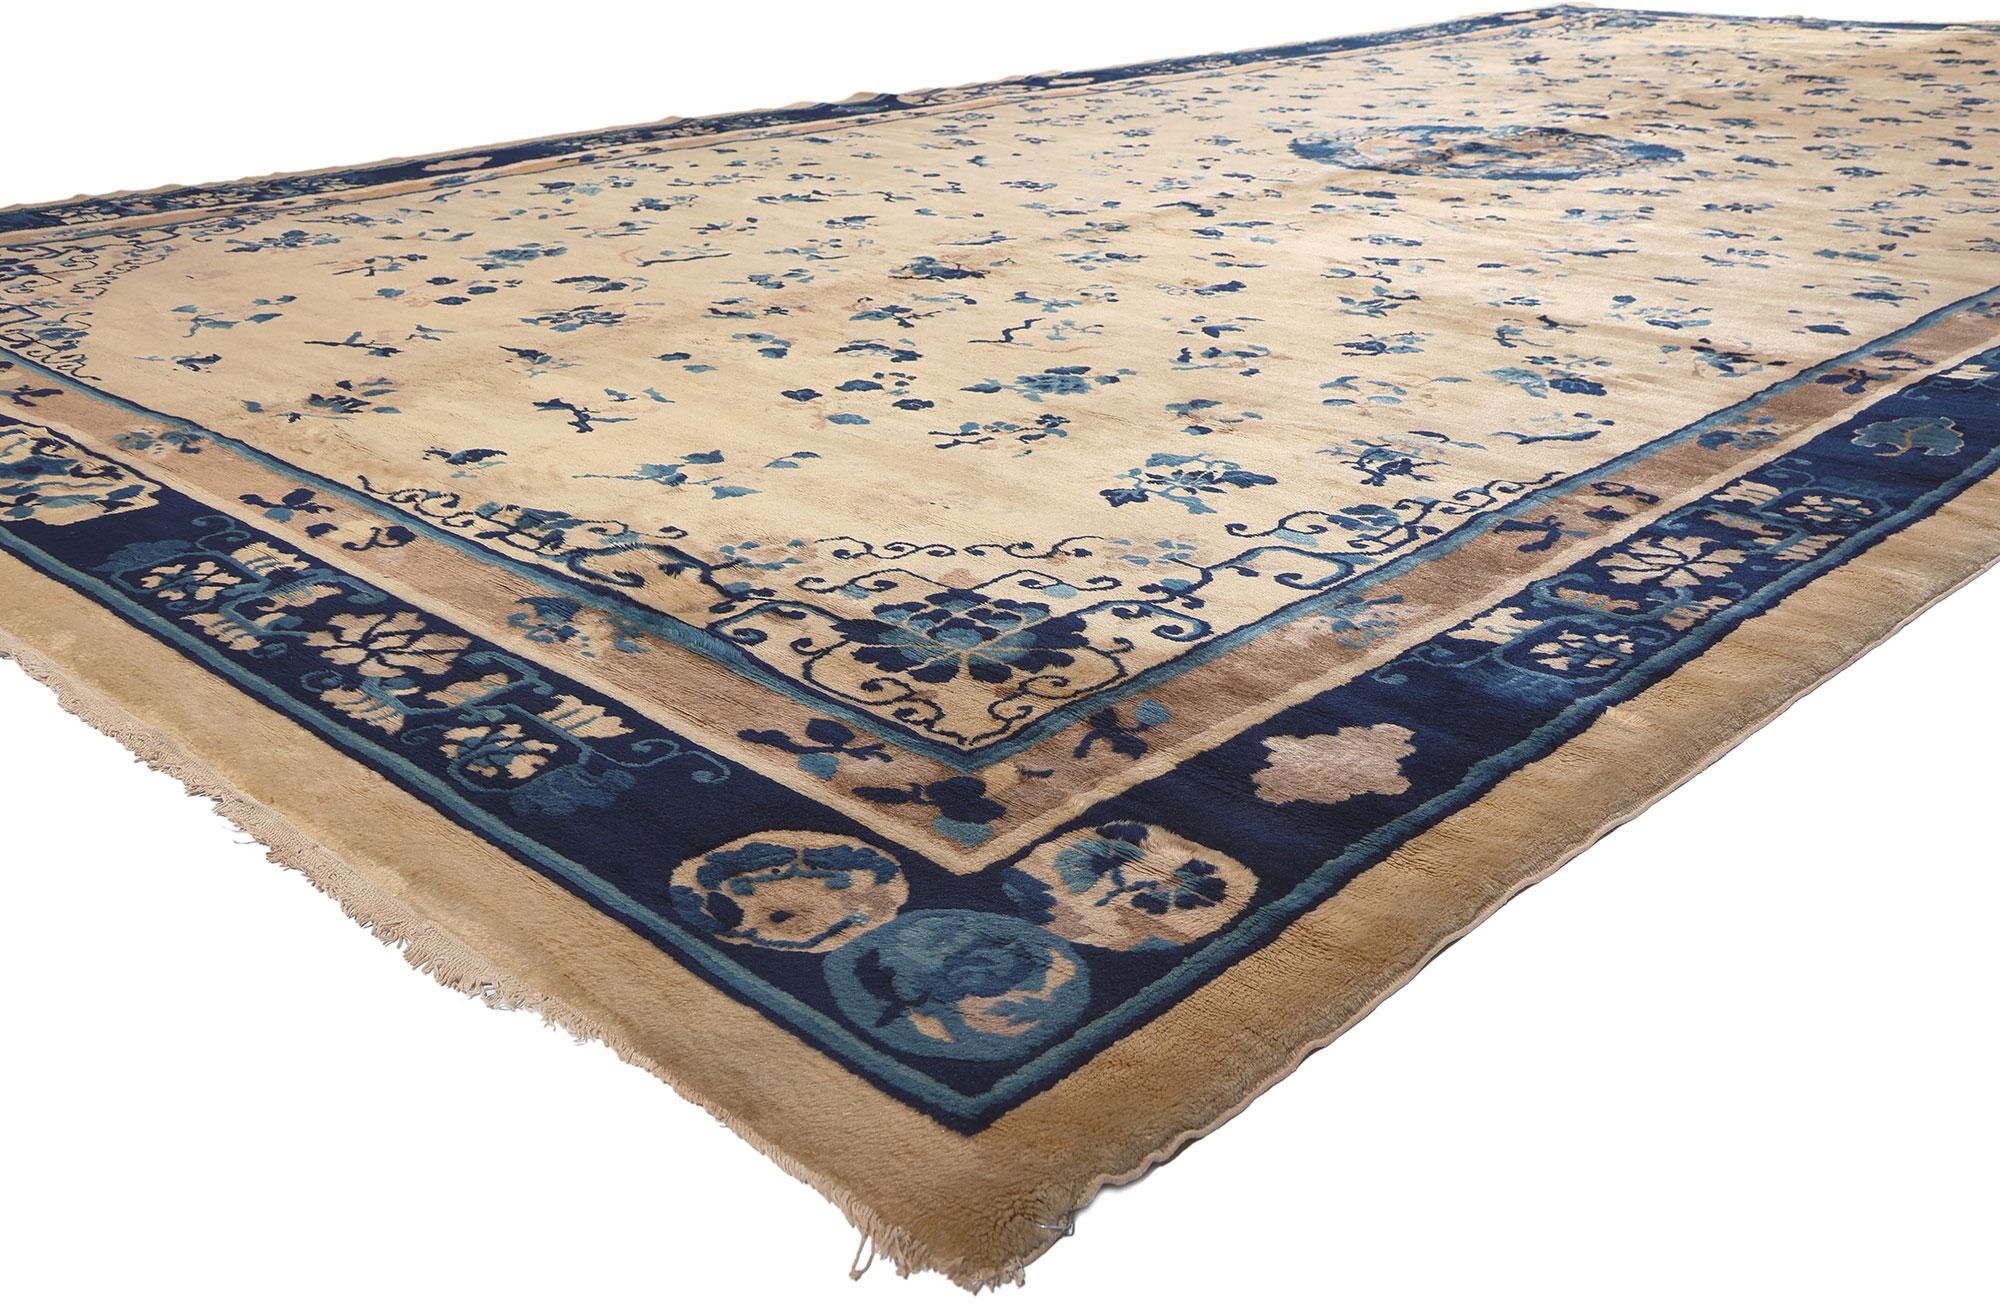 72179 Fin du 19e siècle, ancien tapis chinois de Pékin, 10'02 x 19'03. Le chic de la Chinoiserie s'allie à la décadence royale dans ce tapis Pékin antique surdimensionné en laine nouée à la main. Il présente un mélange captivant de détails floraux